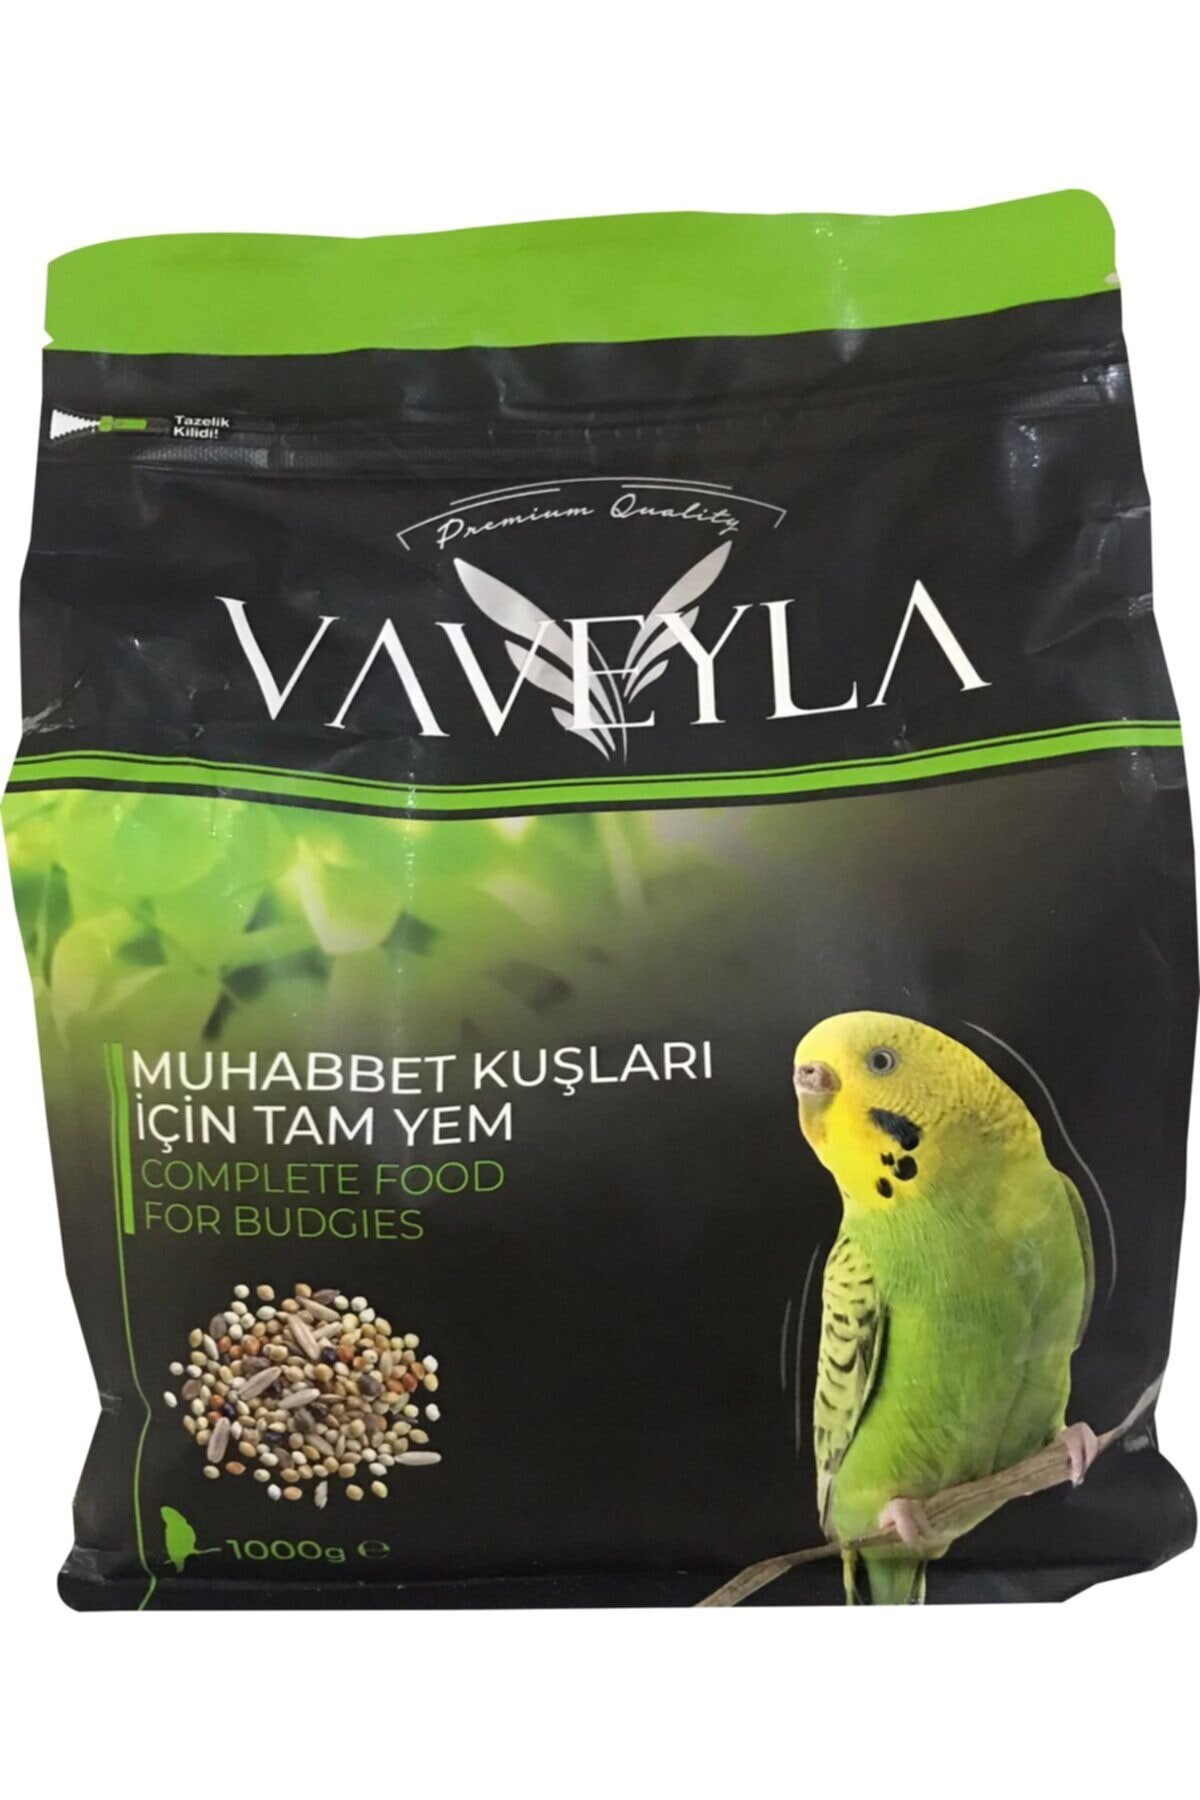 Vaveyla Premium Muhabbet Kuş Yemi 1 KG